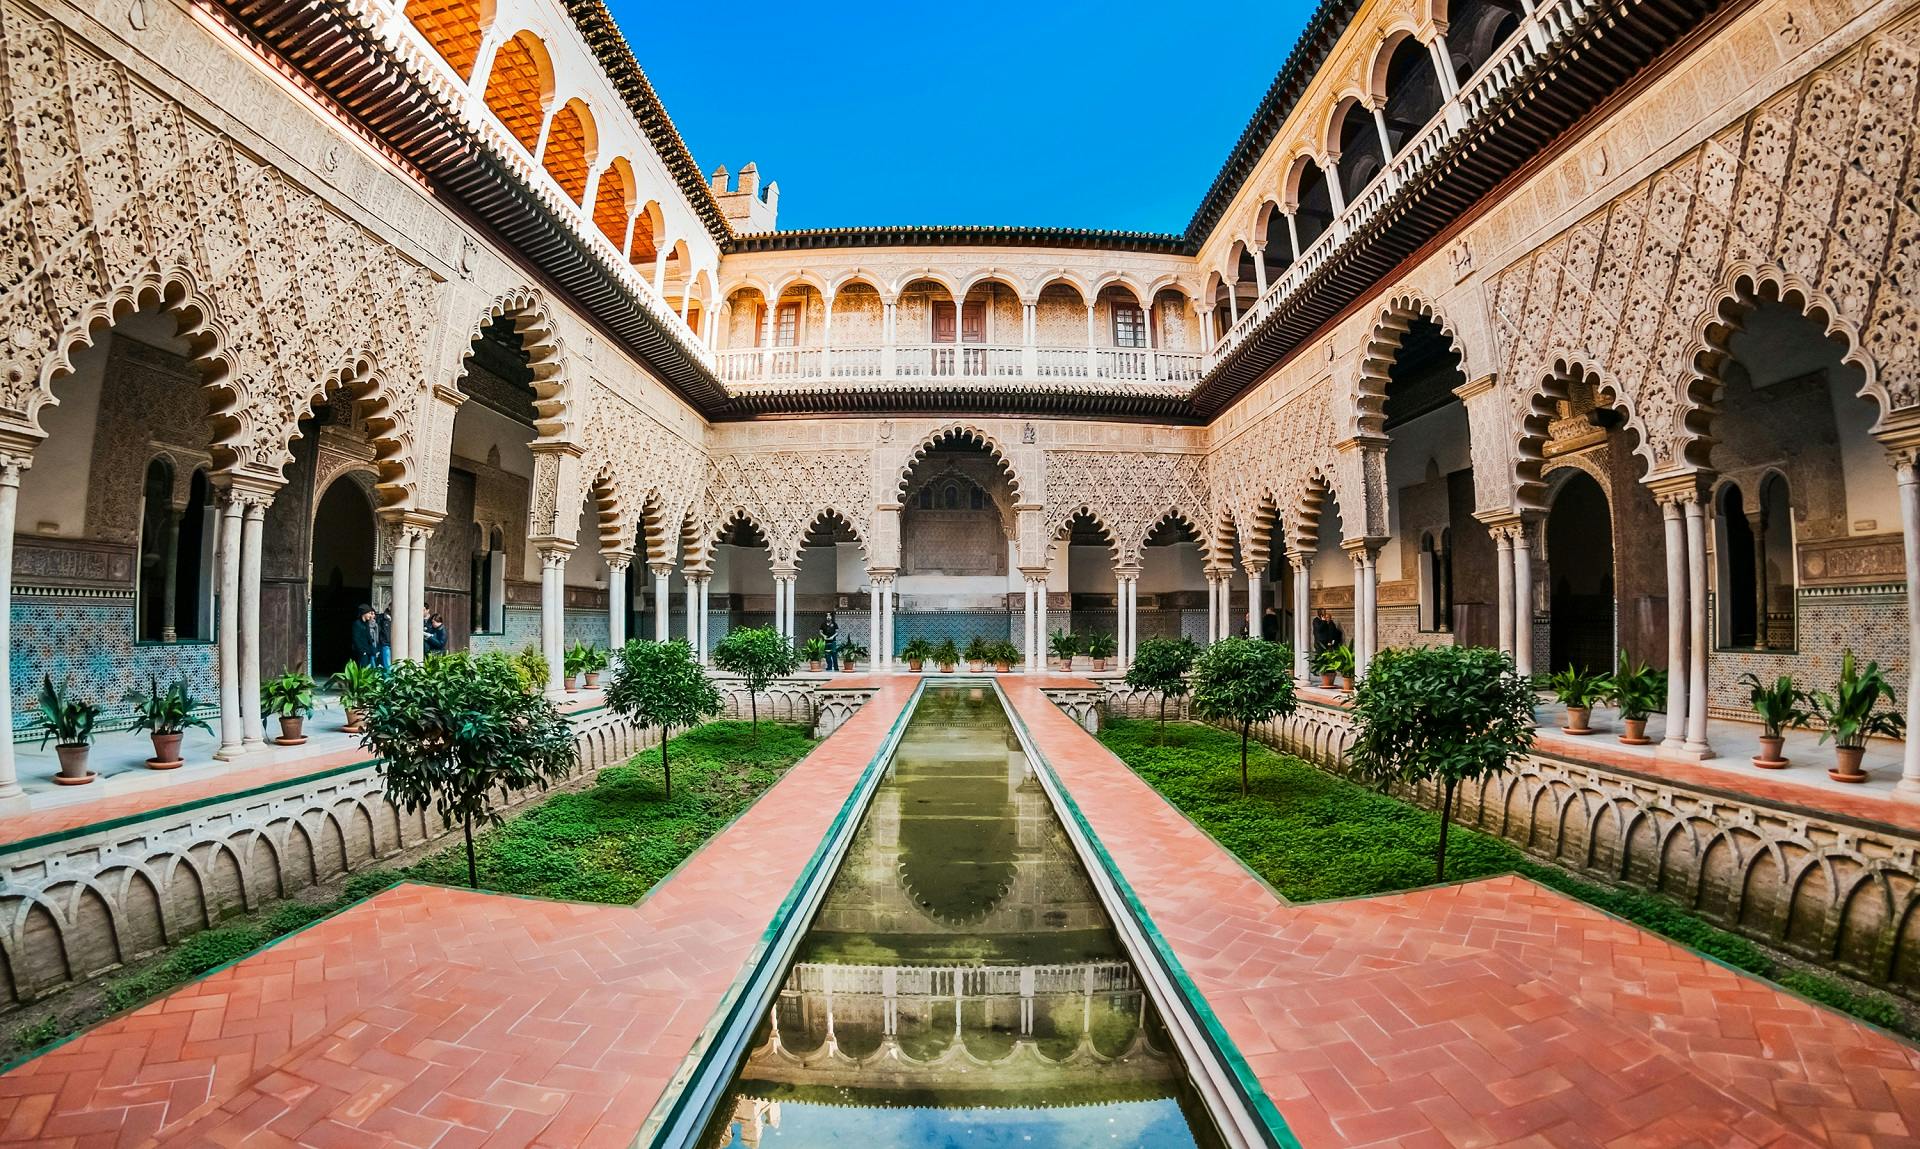 Entradas sin colas a la catedral de Sevilla, la Giralda y el Alcázar y visita guiada